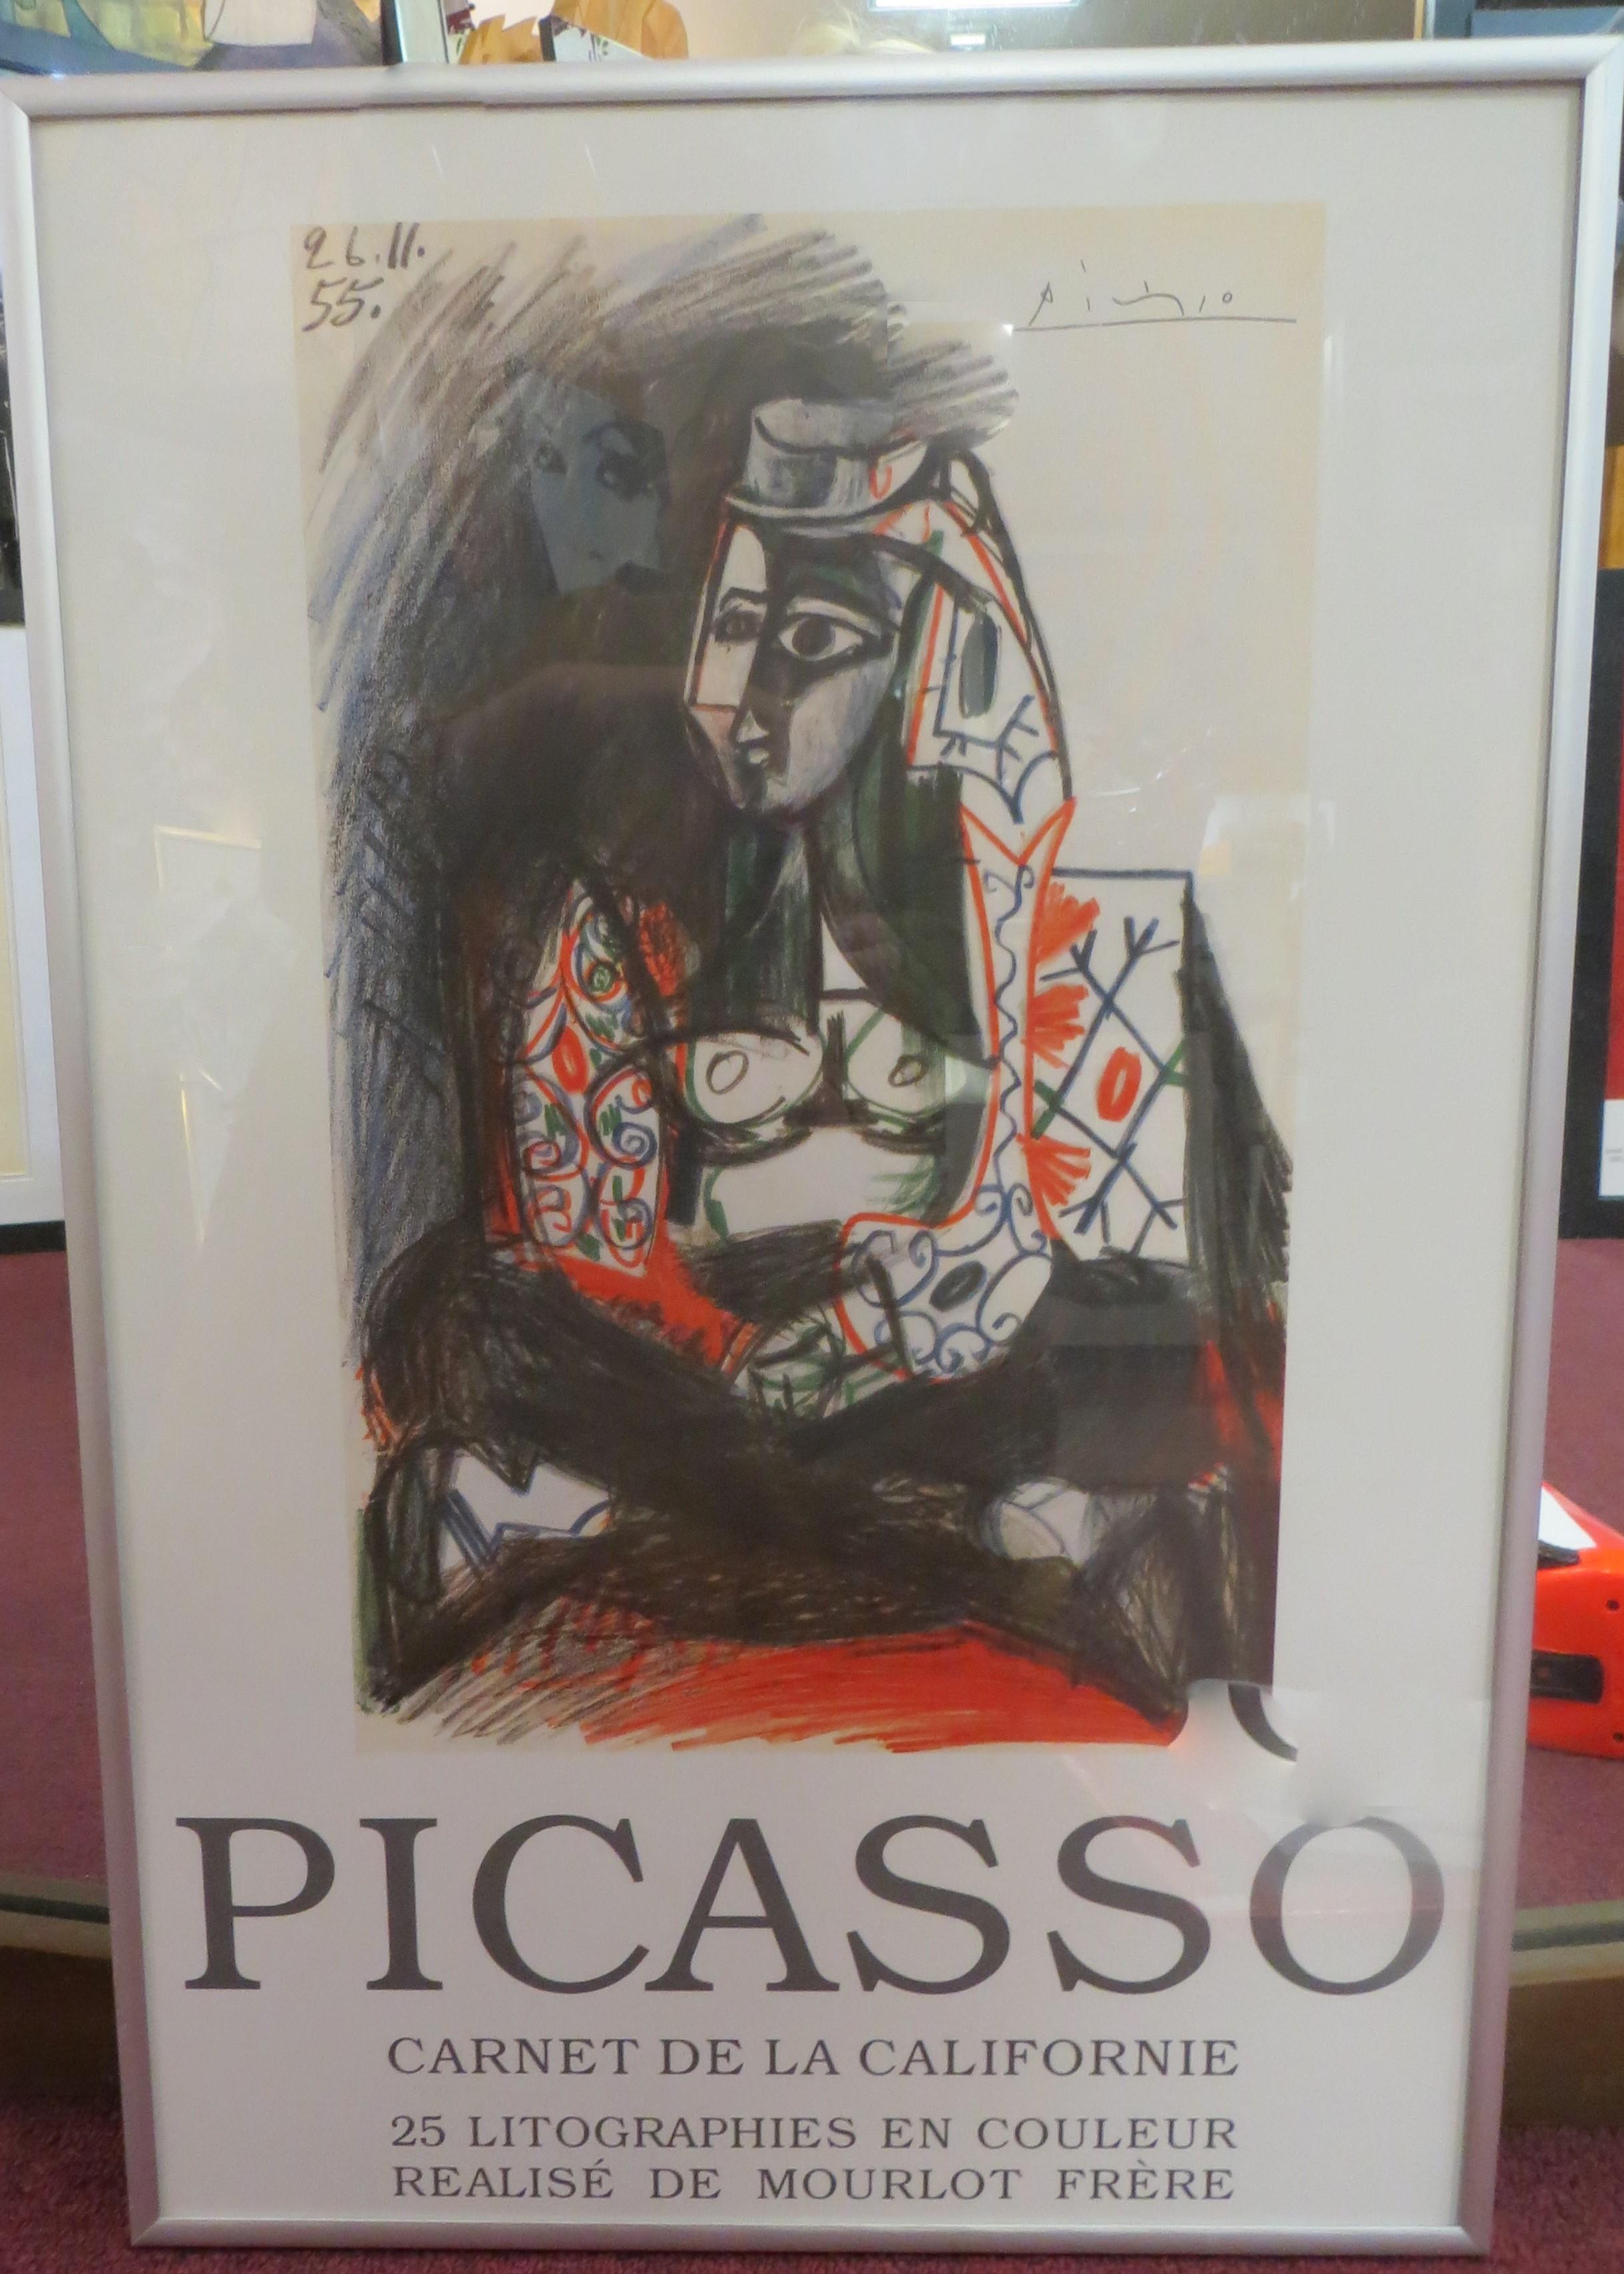 Carnet de la Californie Poster Exhibition   After Picasso - Print by Pablo Picasso